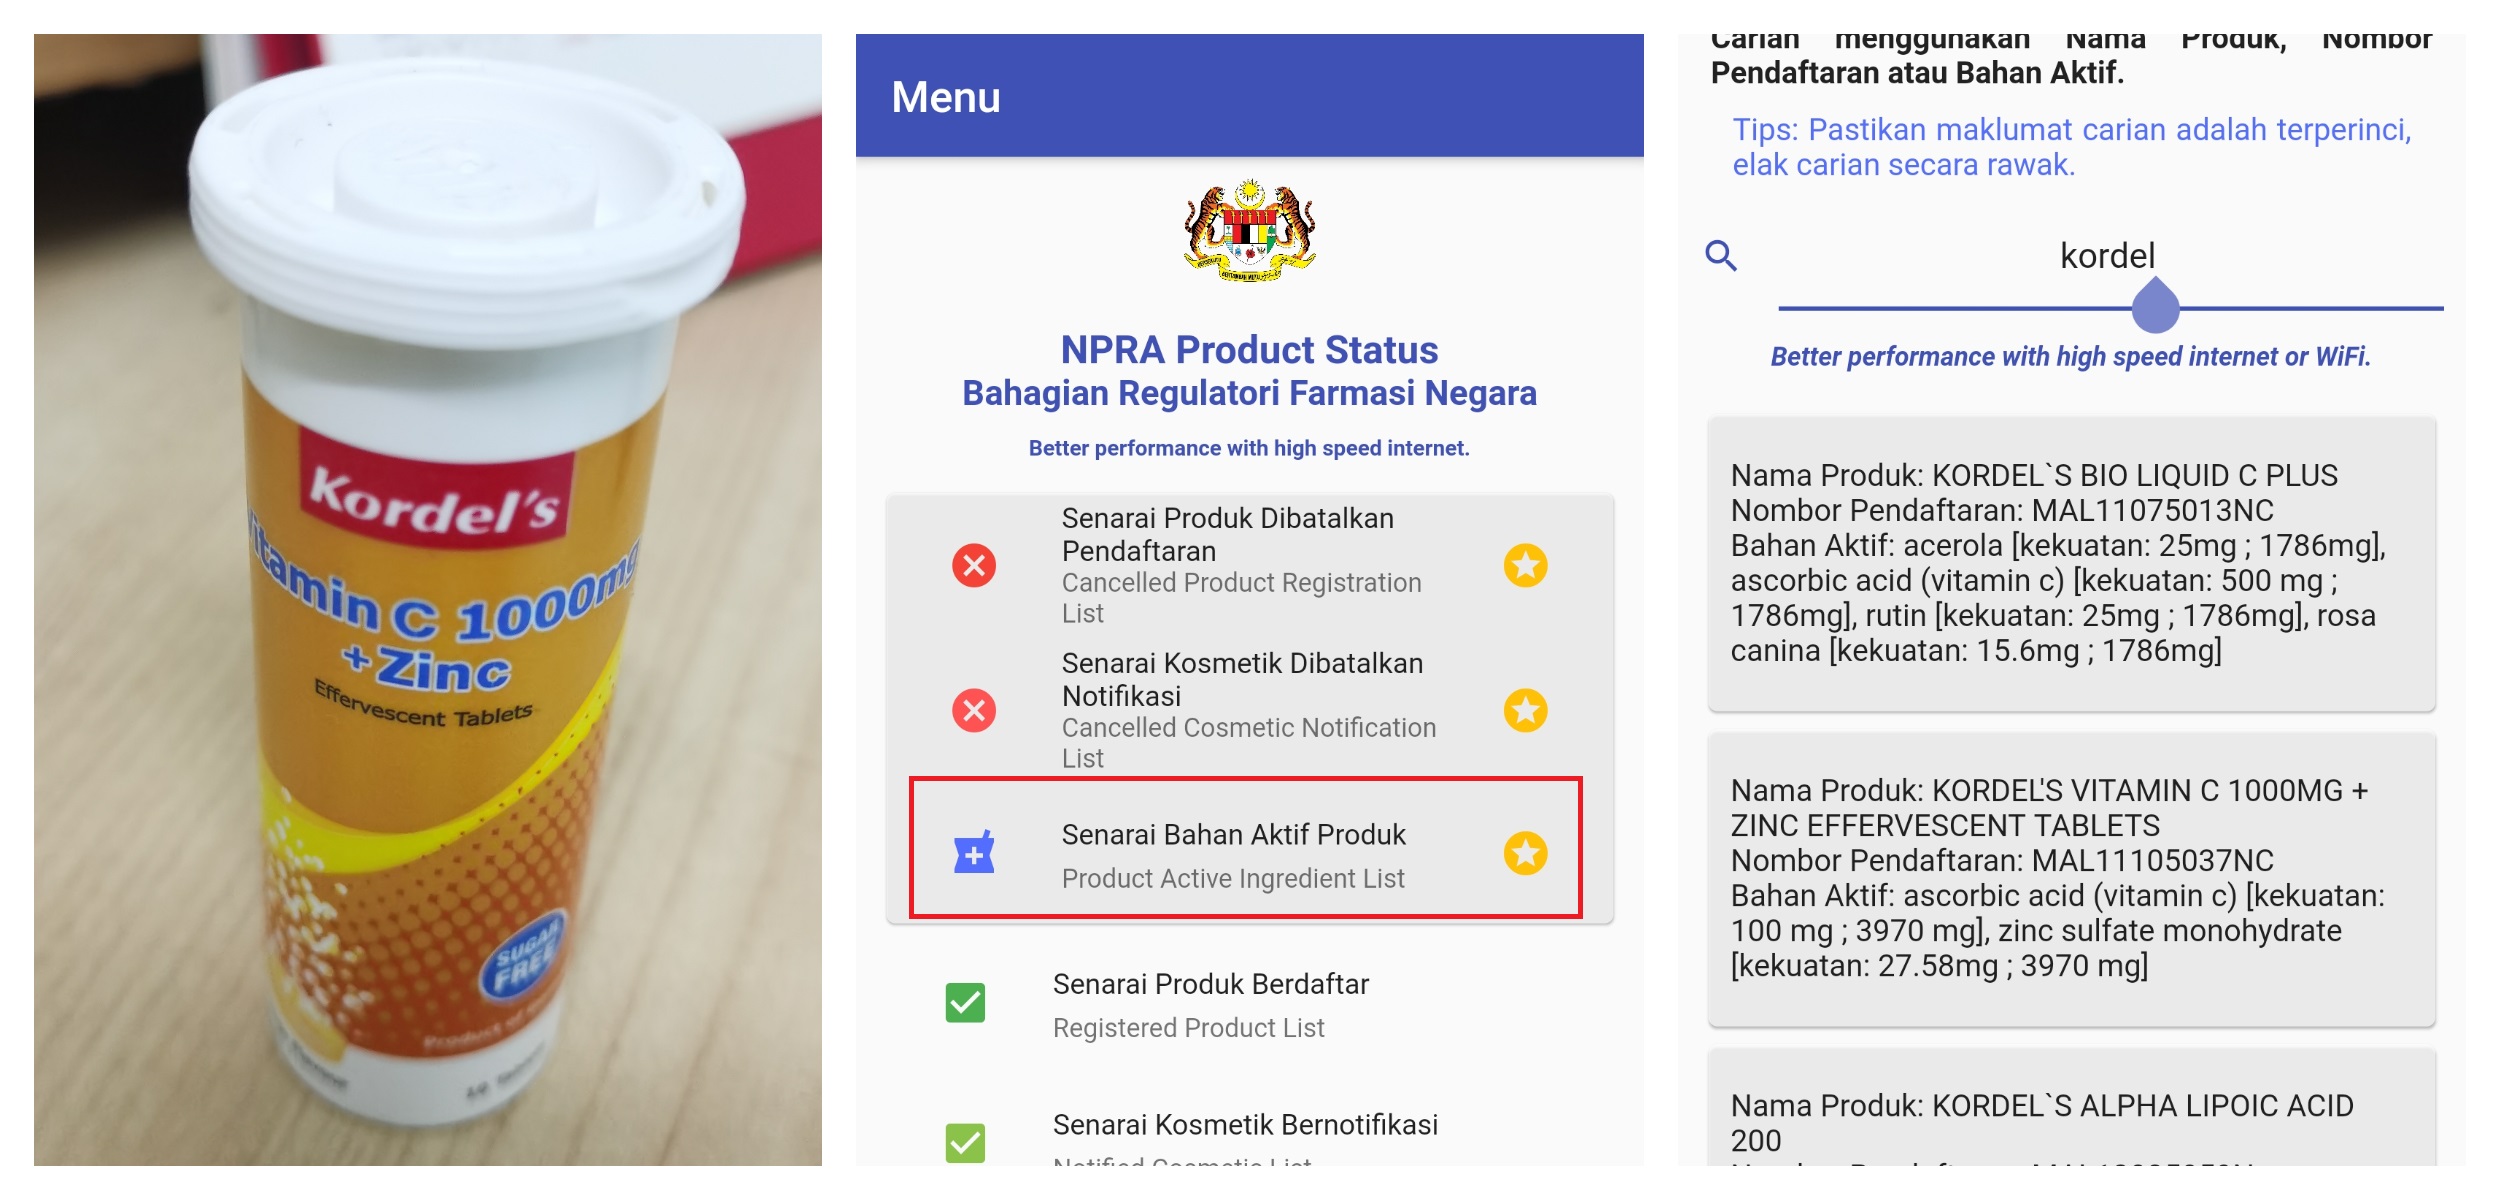 点击Senarai Bahan Aktif Produk（或 Product Active Ingredient List），并输入产品名称或注册号码即可。、精彩大马制图-